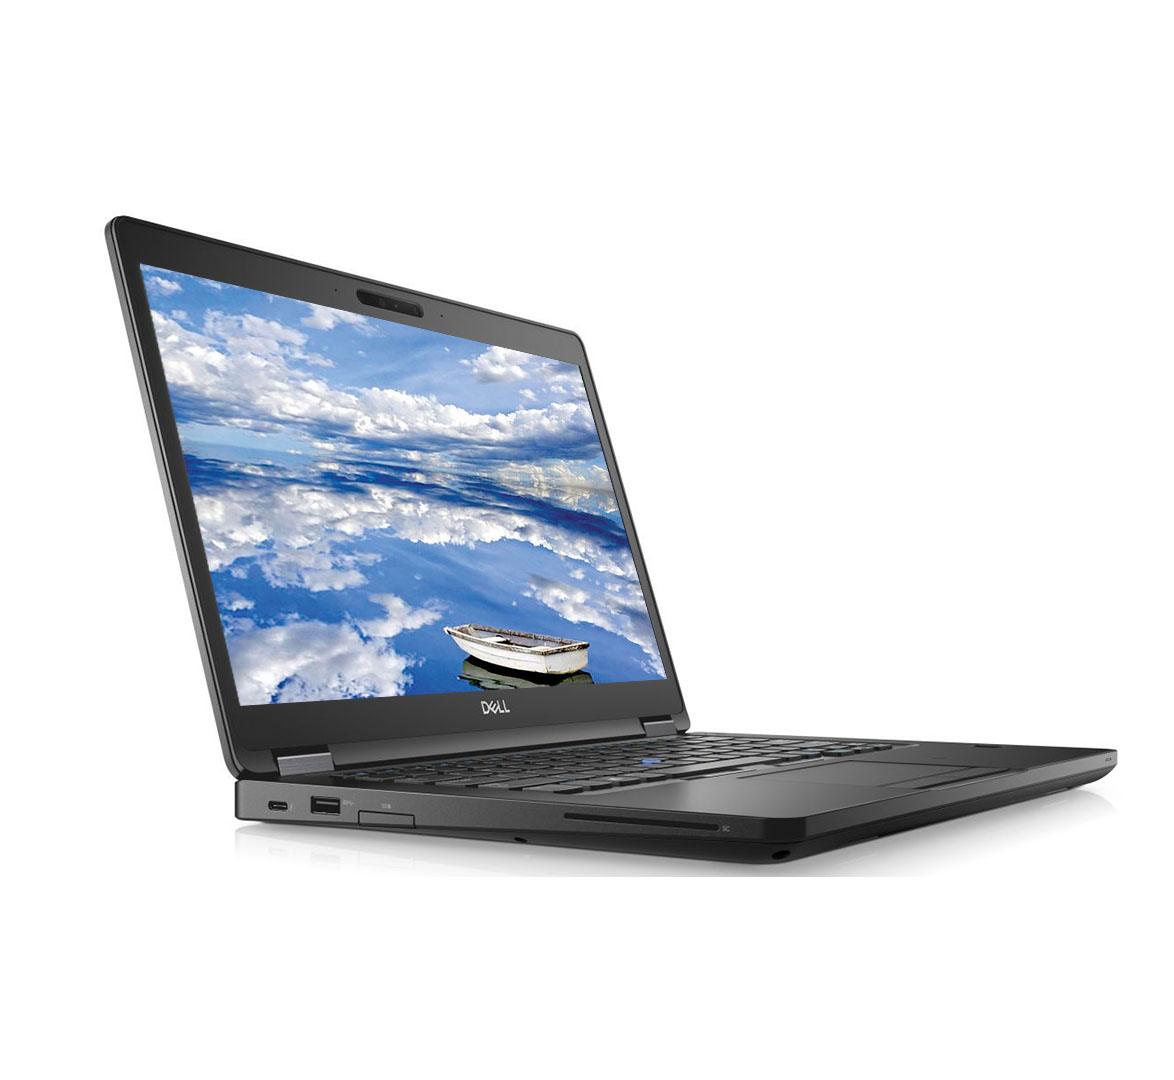 Dell Latitude E5490 Business Laptop, Intel Core i5-8th Gen CPU, 16GB RAM, 256GB SSD, 14 inch Display , Windows 10 Pro